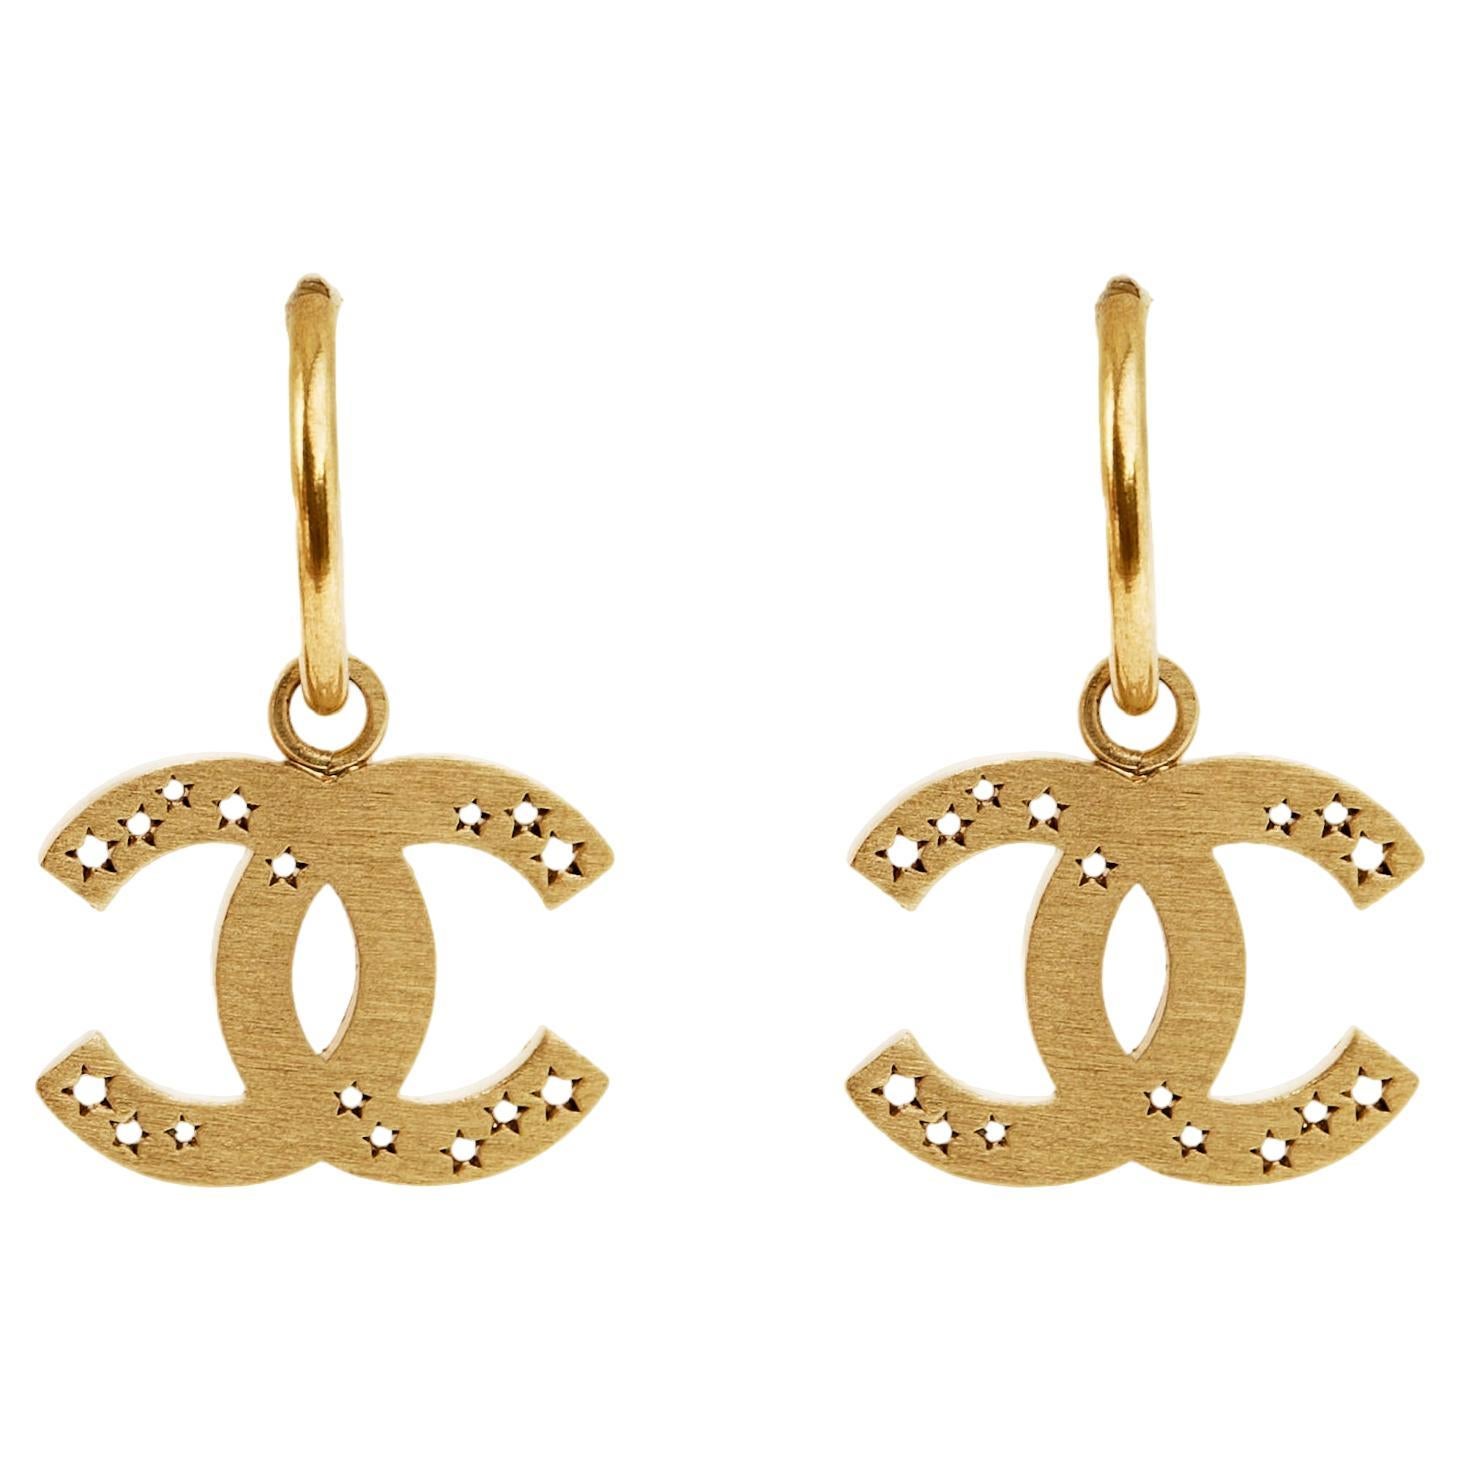 SS2004 Chanel Earrings Studs Hoops Golden open stars CC